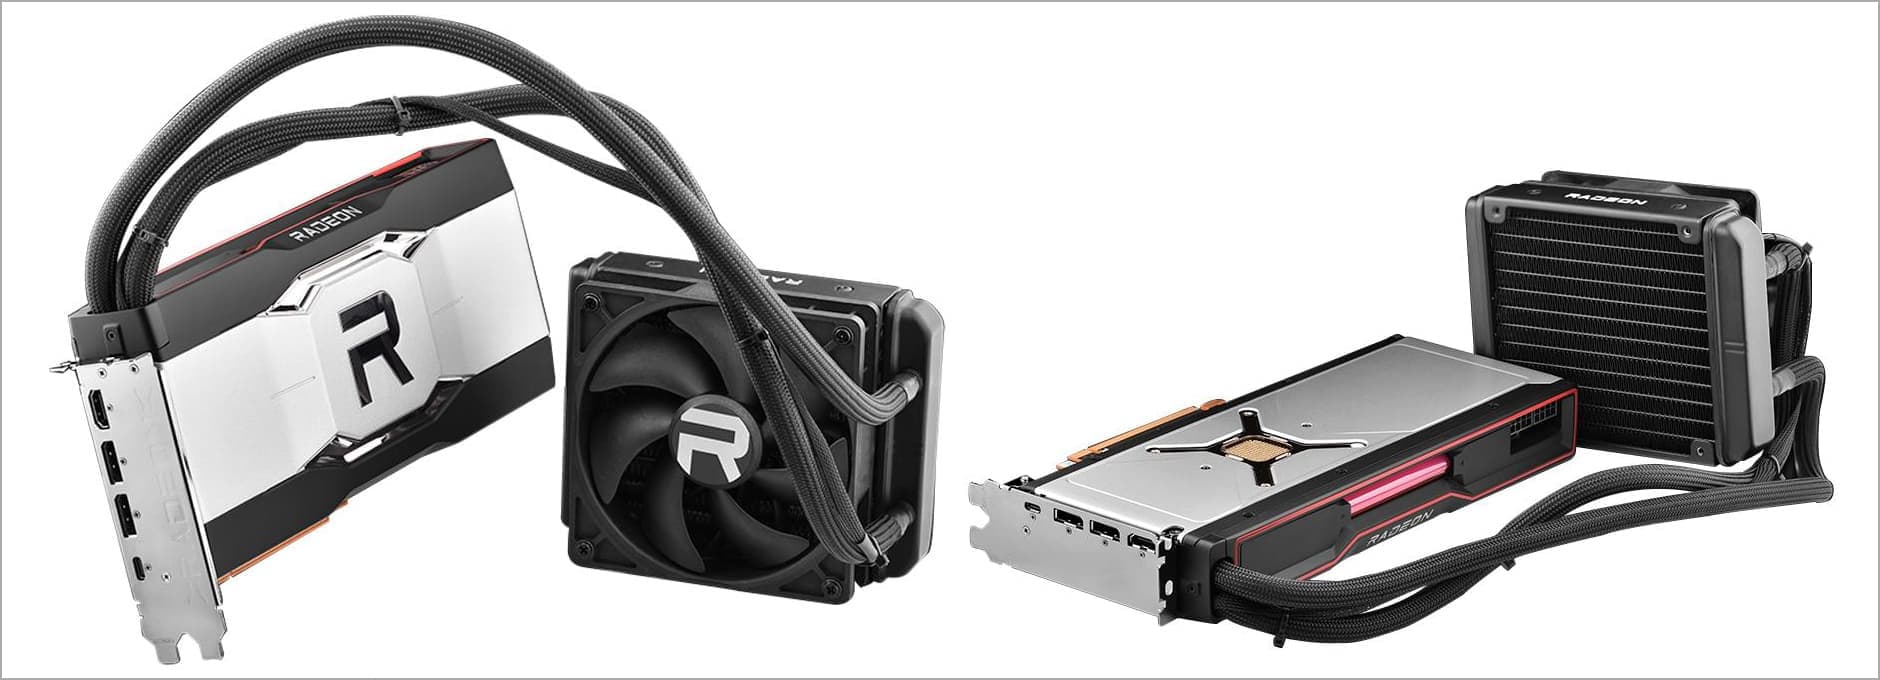 AMD、Radeon RX 6900 XTの水冷モデルを投入か。ブラジルのショップに 